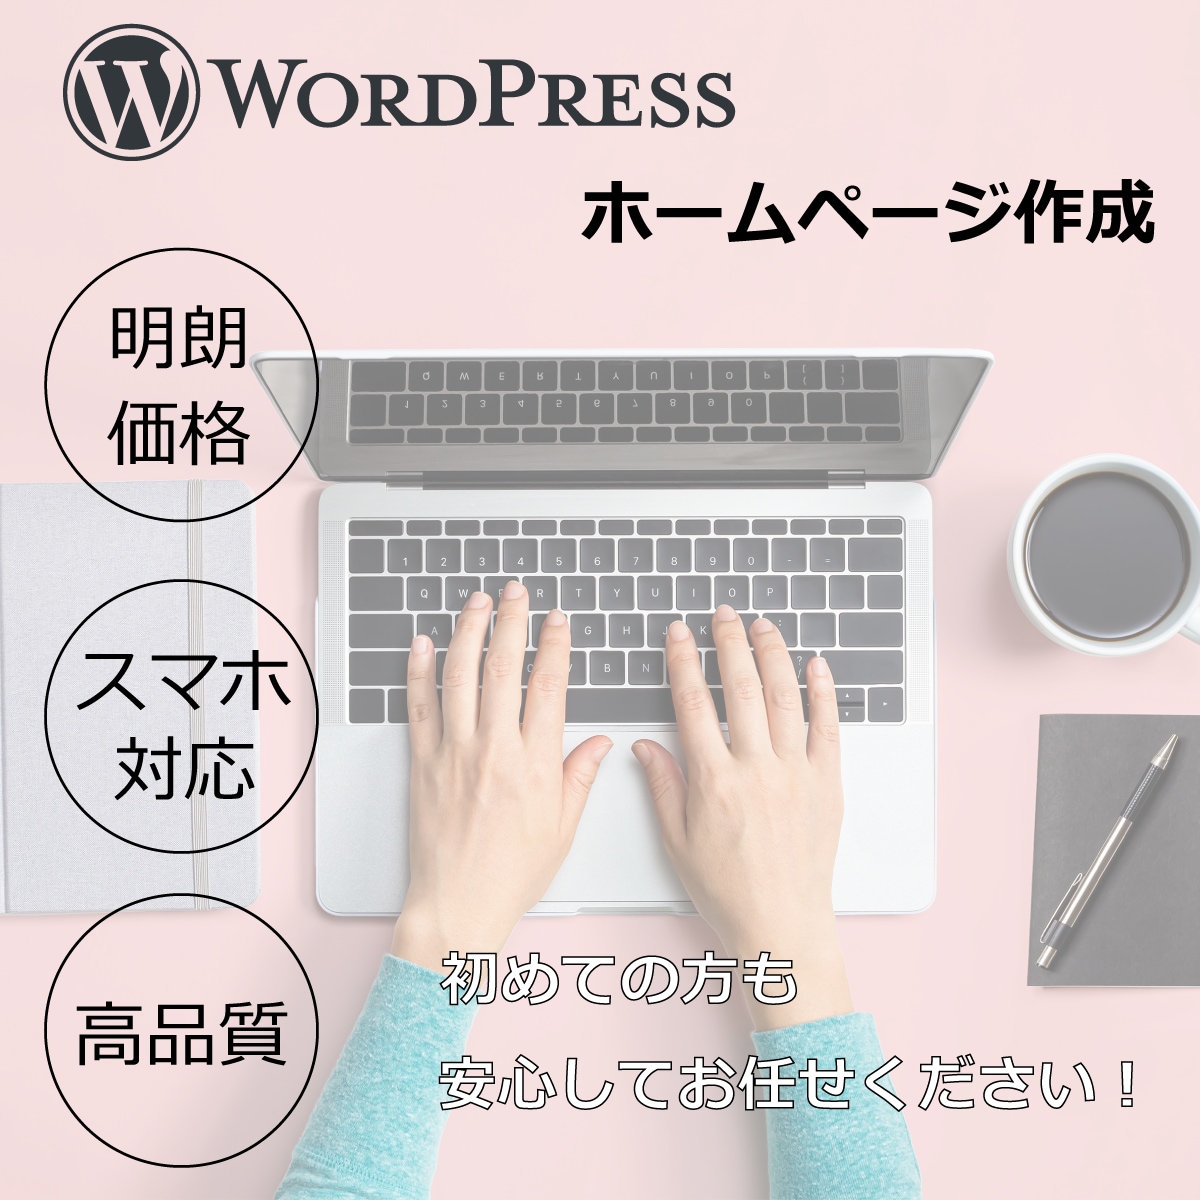 WordPressで超格安でホームページ作成します 破格対応です！クーポン3000円分付けます！ イメージ1